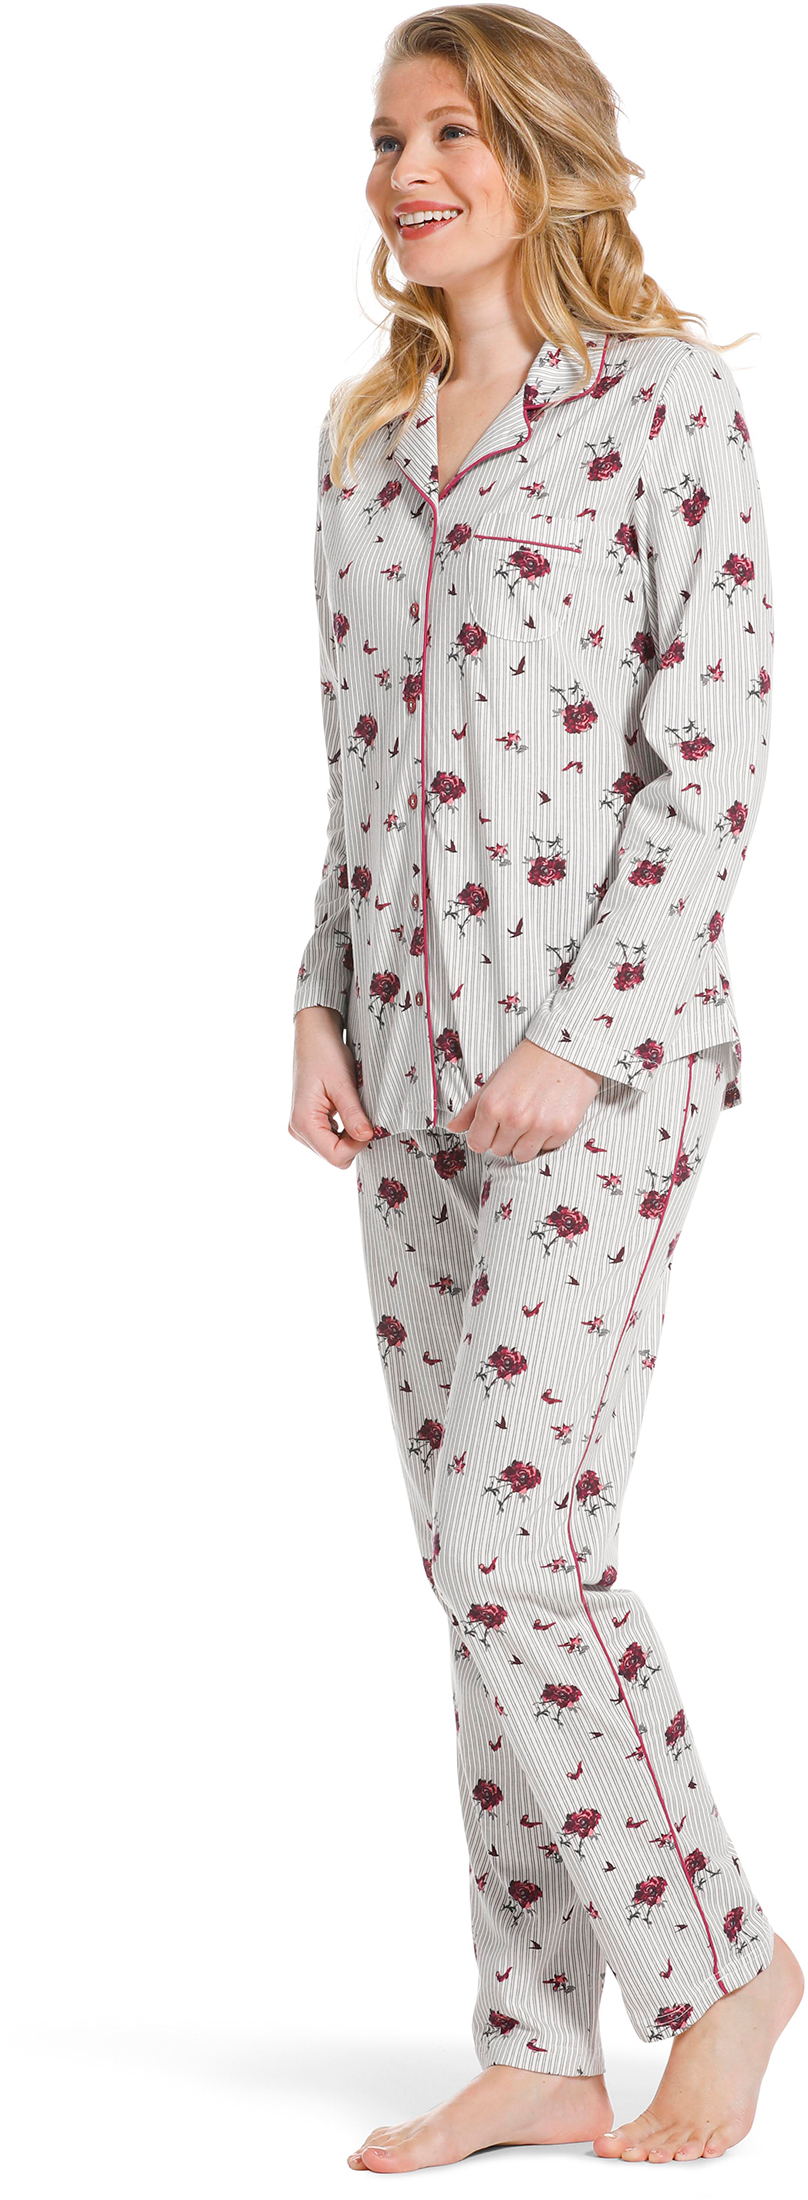 Pastunette doorknoop dames pyjama 20222-156-6-40